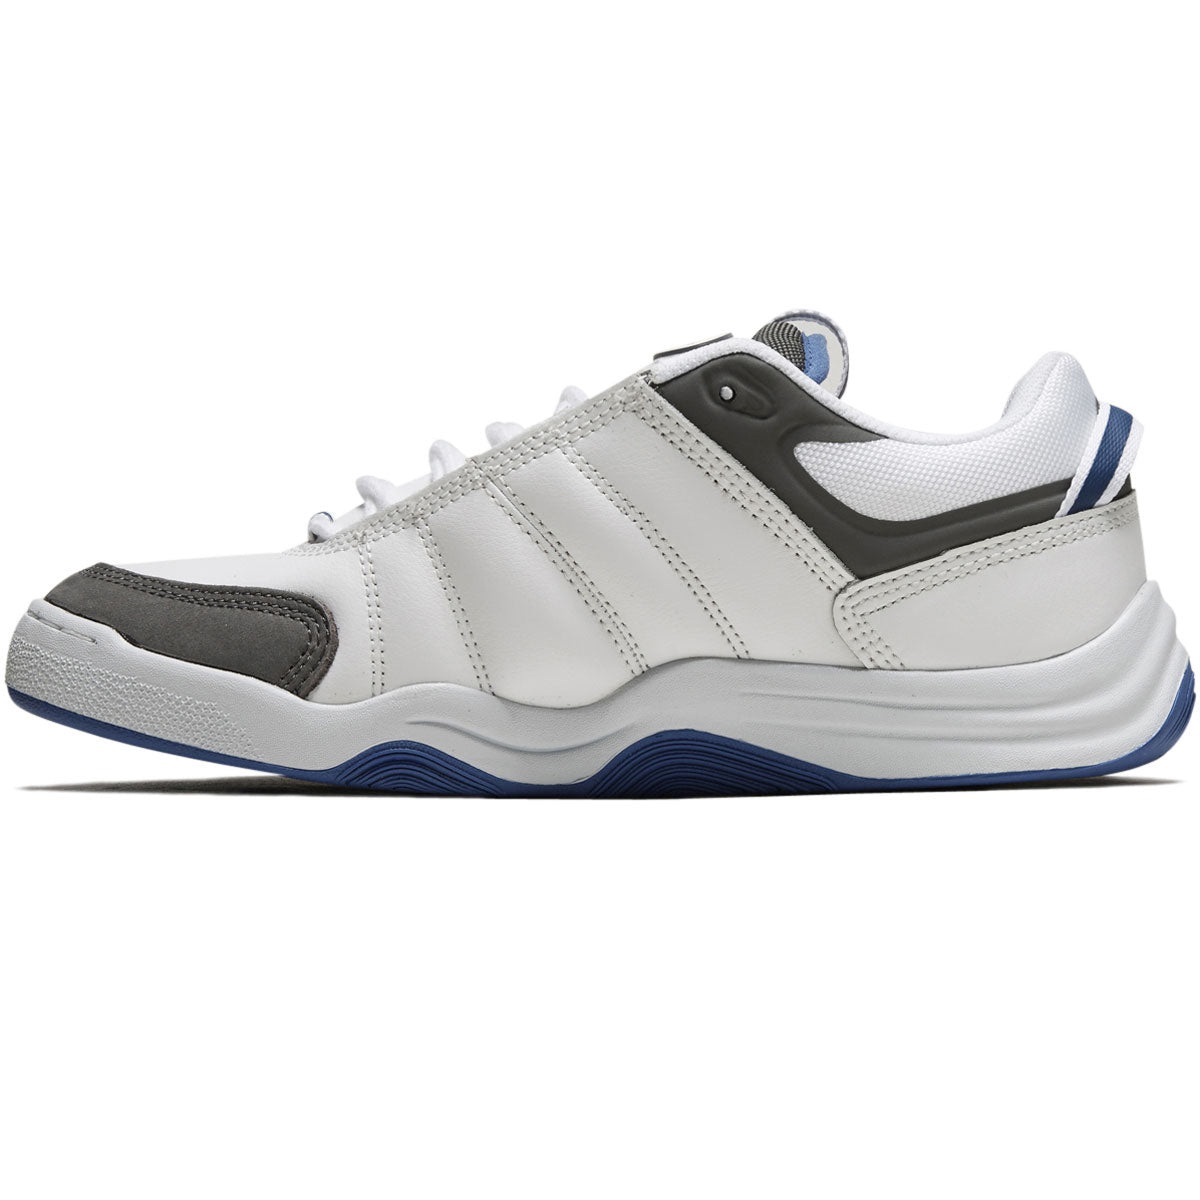 eS Evant Shoes - White/Grey/Blue image 2